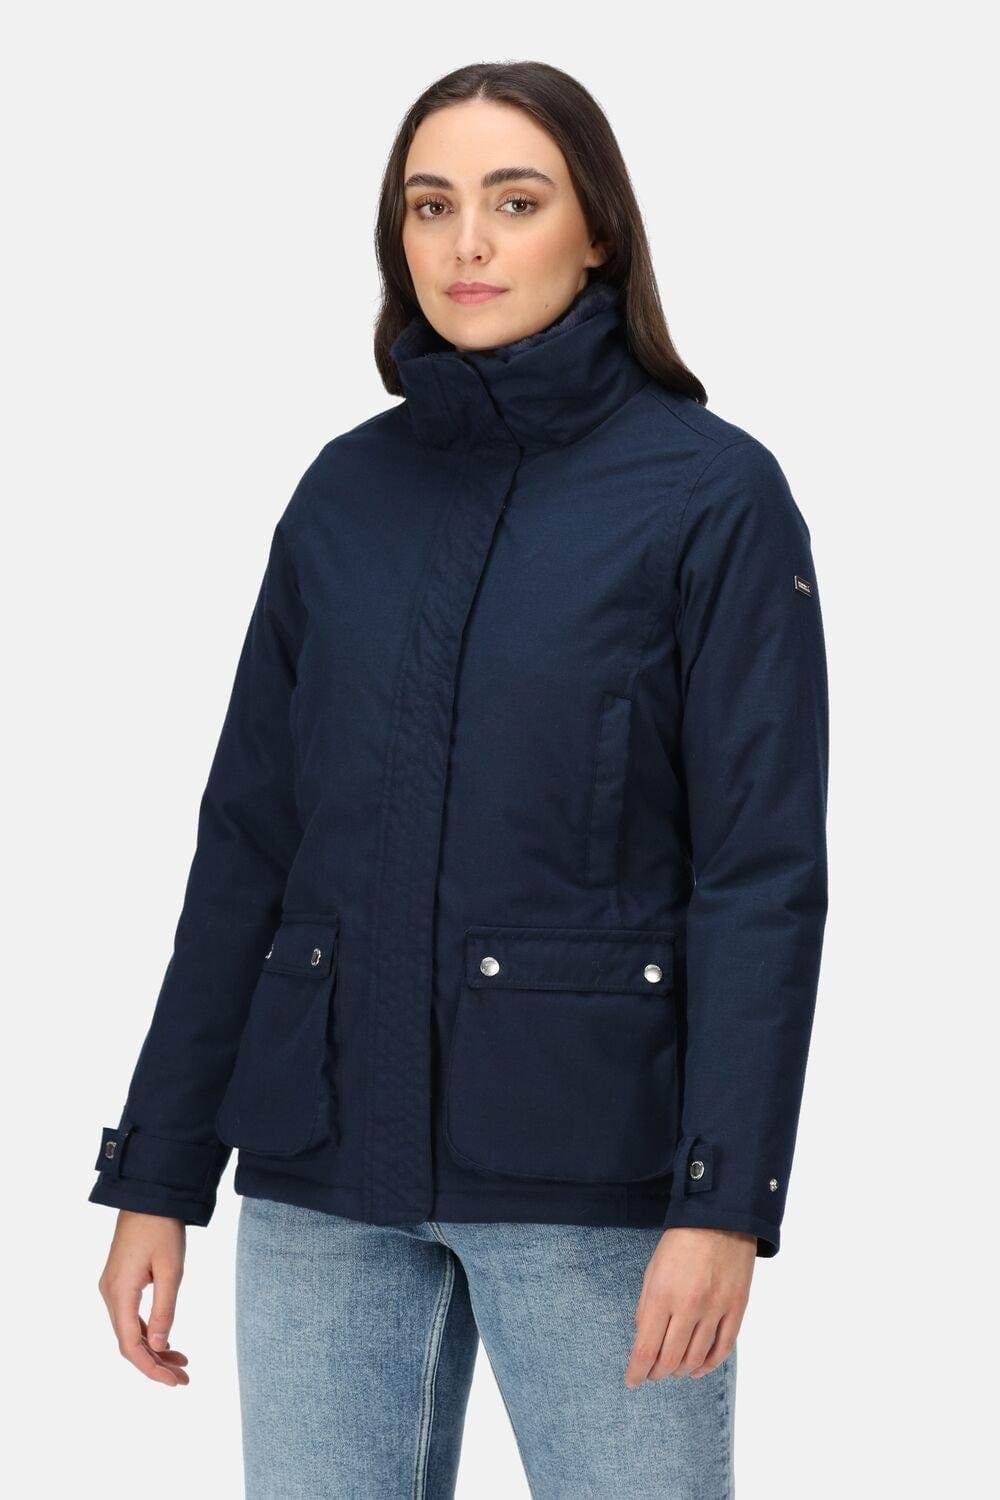 'Leighton' Isotex Waterproof Hooded Jacket